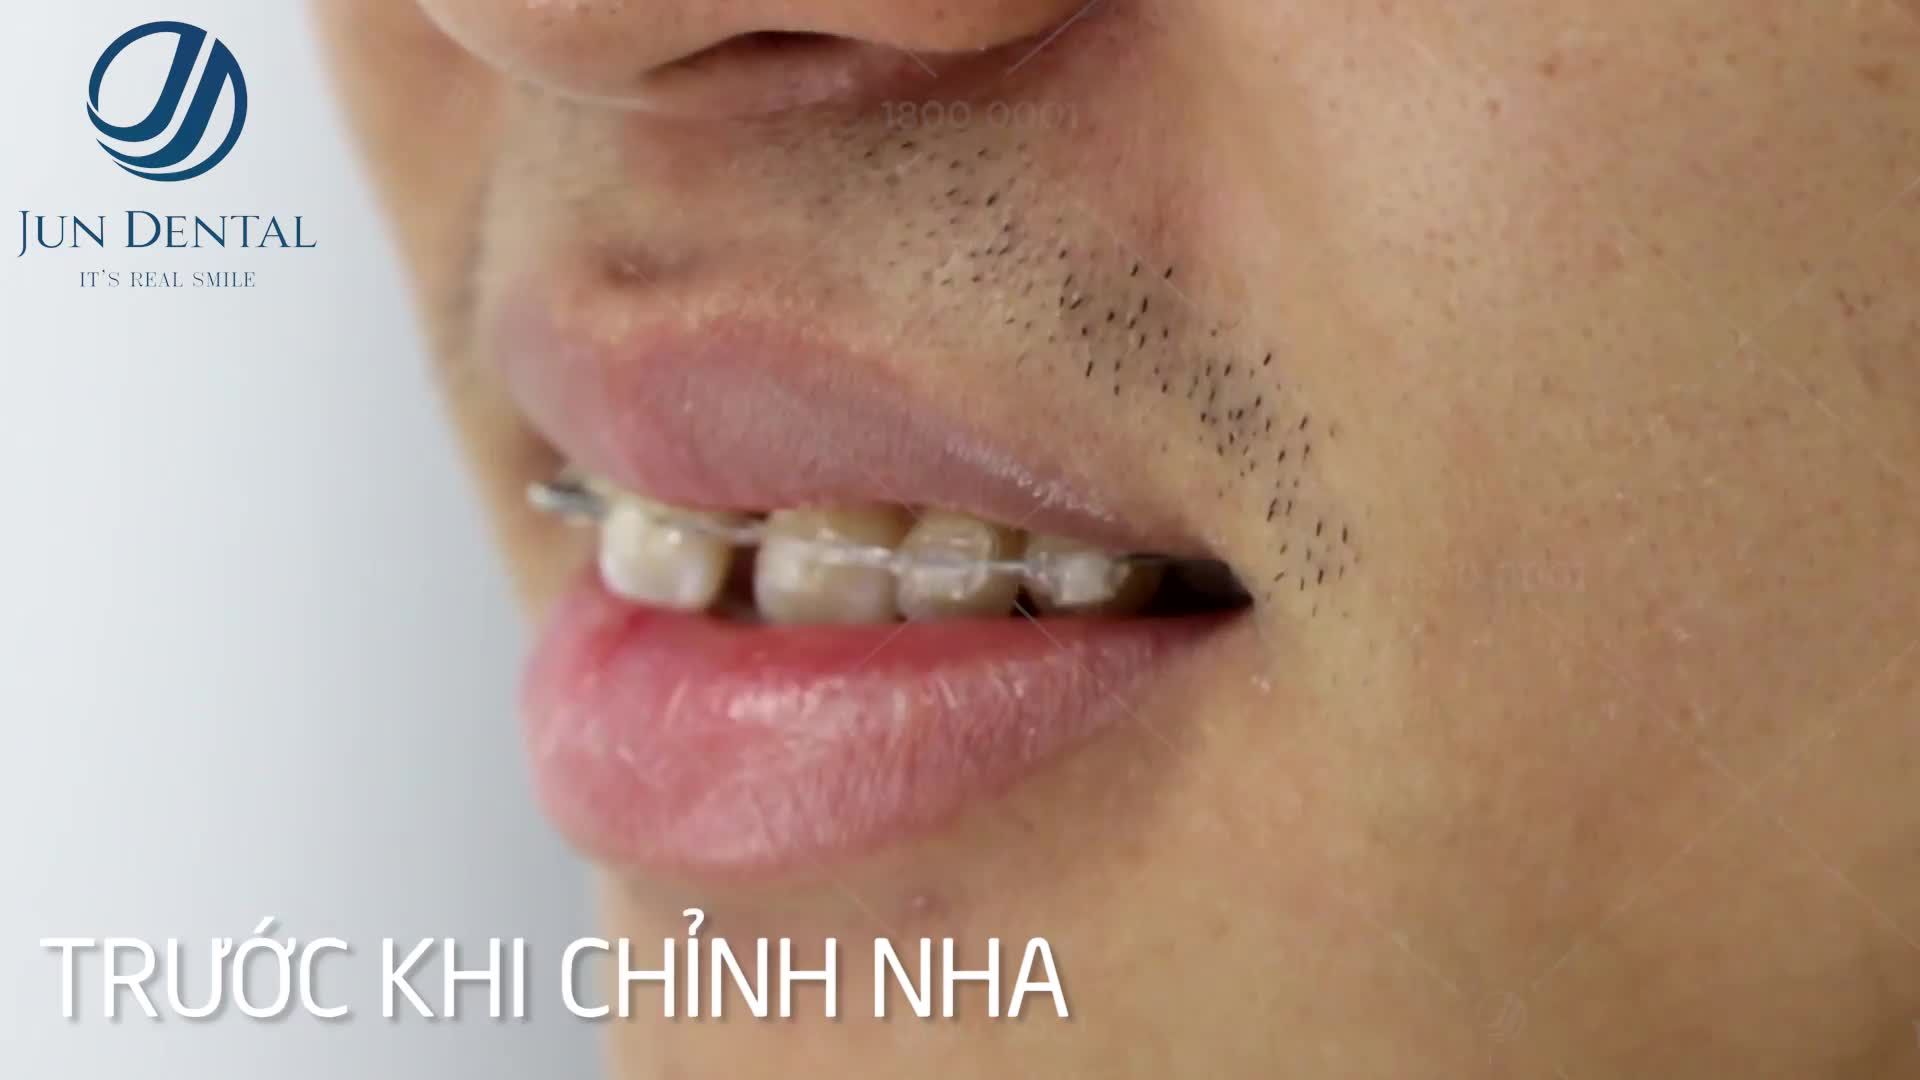 Tiến triển sau 05 tháng thực hiện niềng răng của bạn Trần Văn Thiên - 24 tuổi tại Jun Dental.